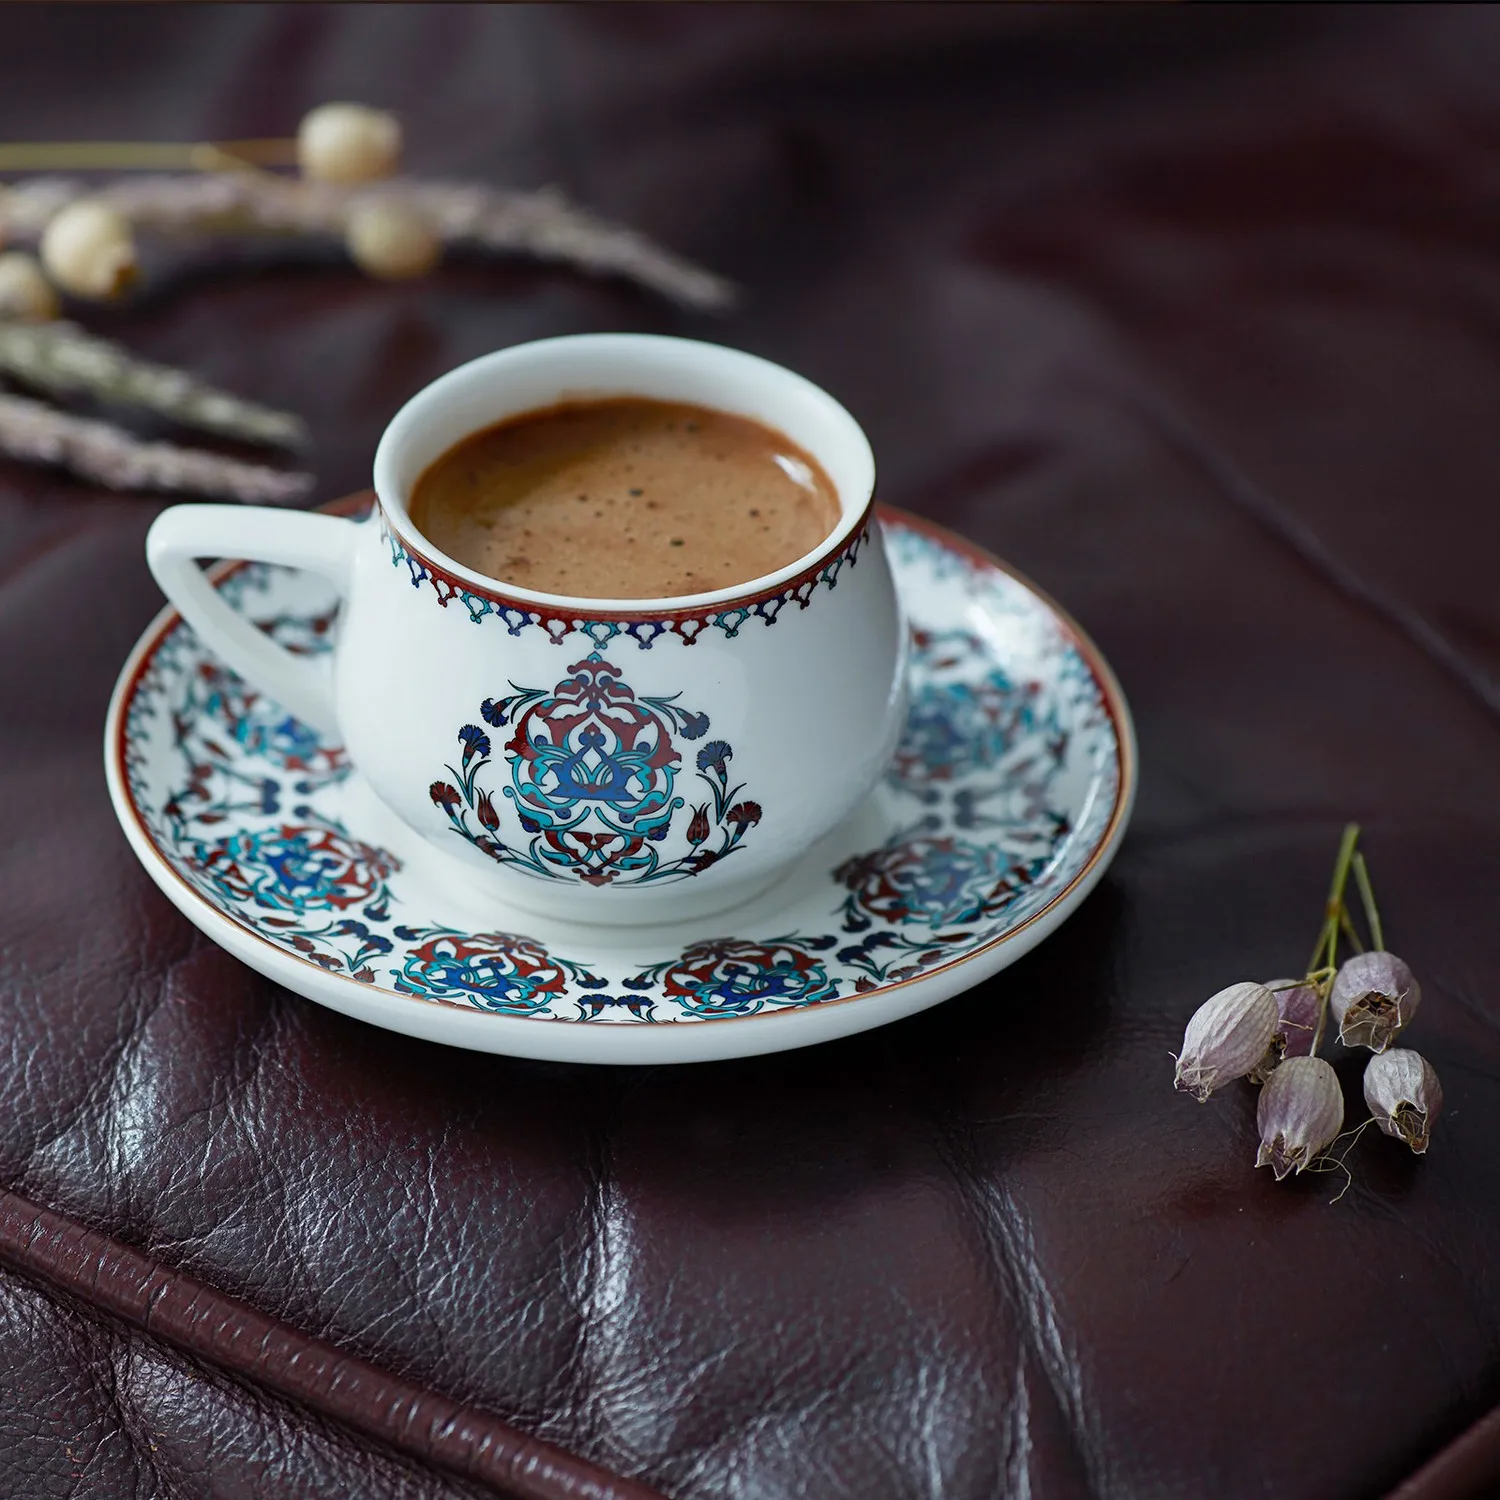 

Набор кофейных чашек Karaca nakkaai 2, традиционный этнический дизайн, короткий широкий дизайн, простой светящийся замечательный внешний вид